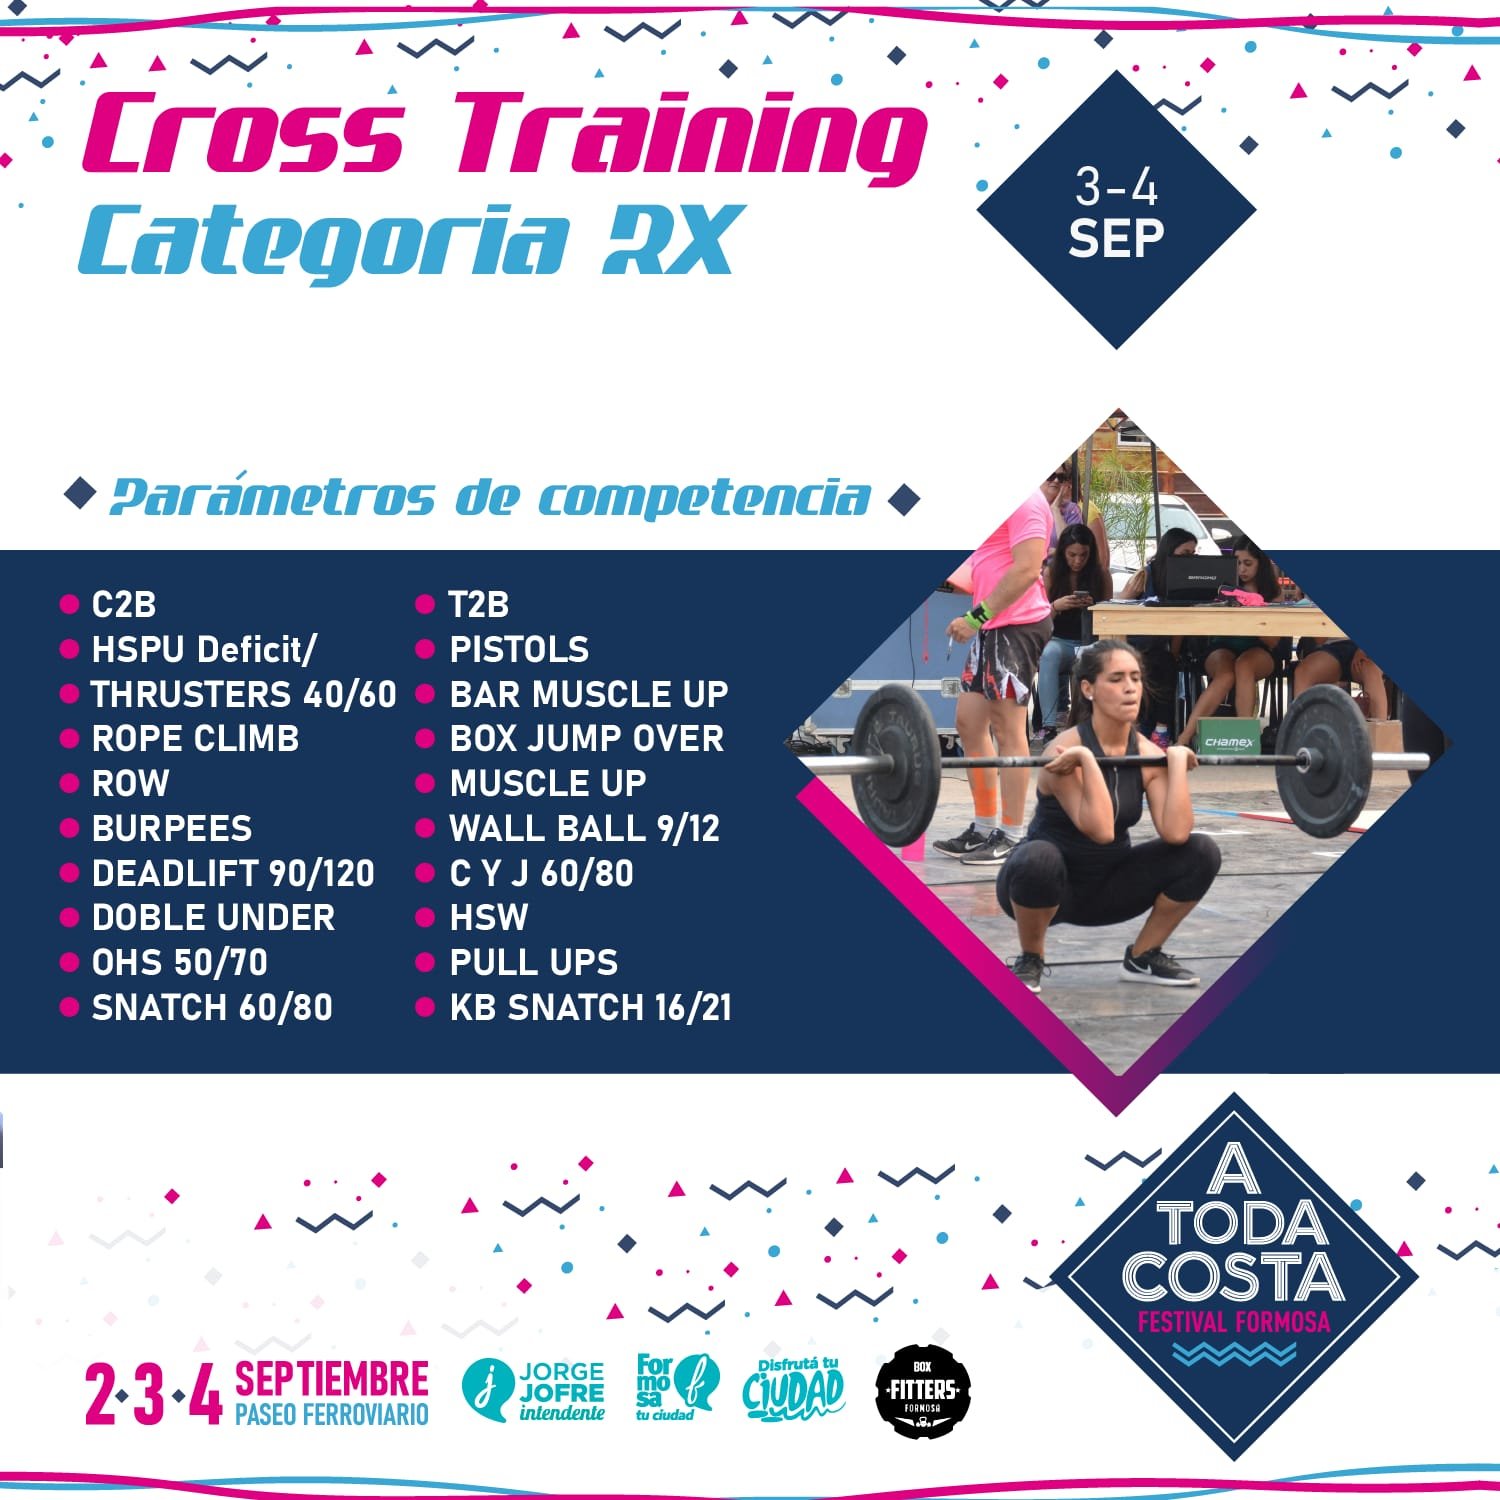 Cross Training Categoría RX